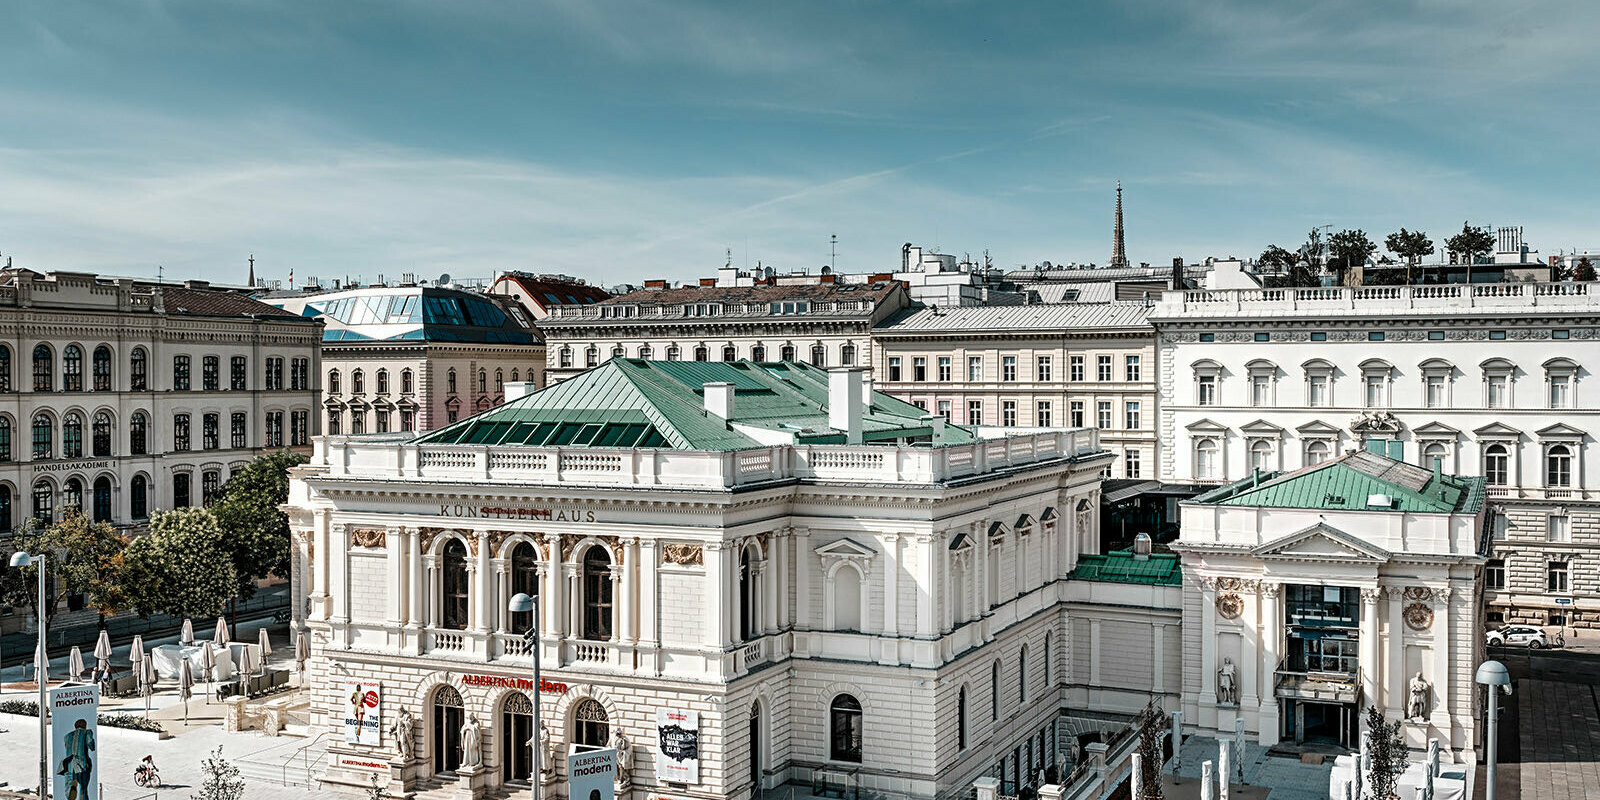 Můžete vidět Dům umělců ve Vídni obklopený dalšími budovami.